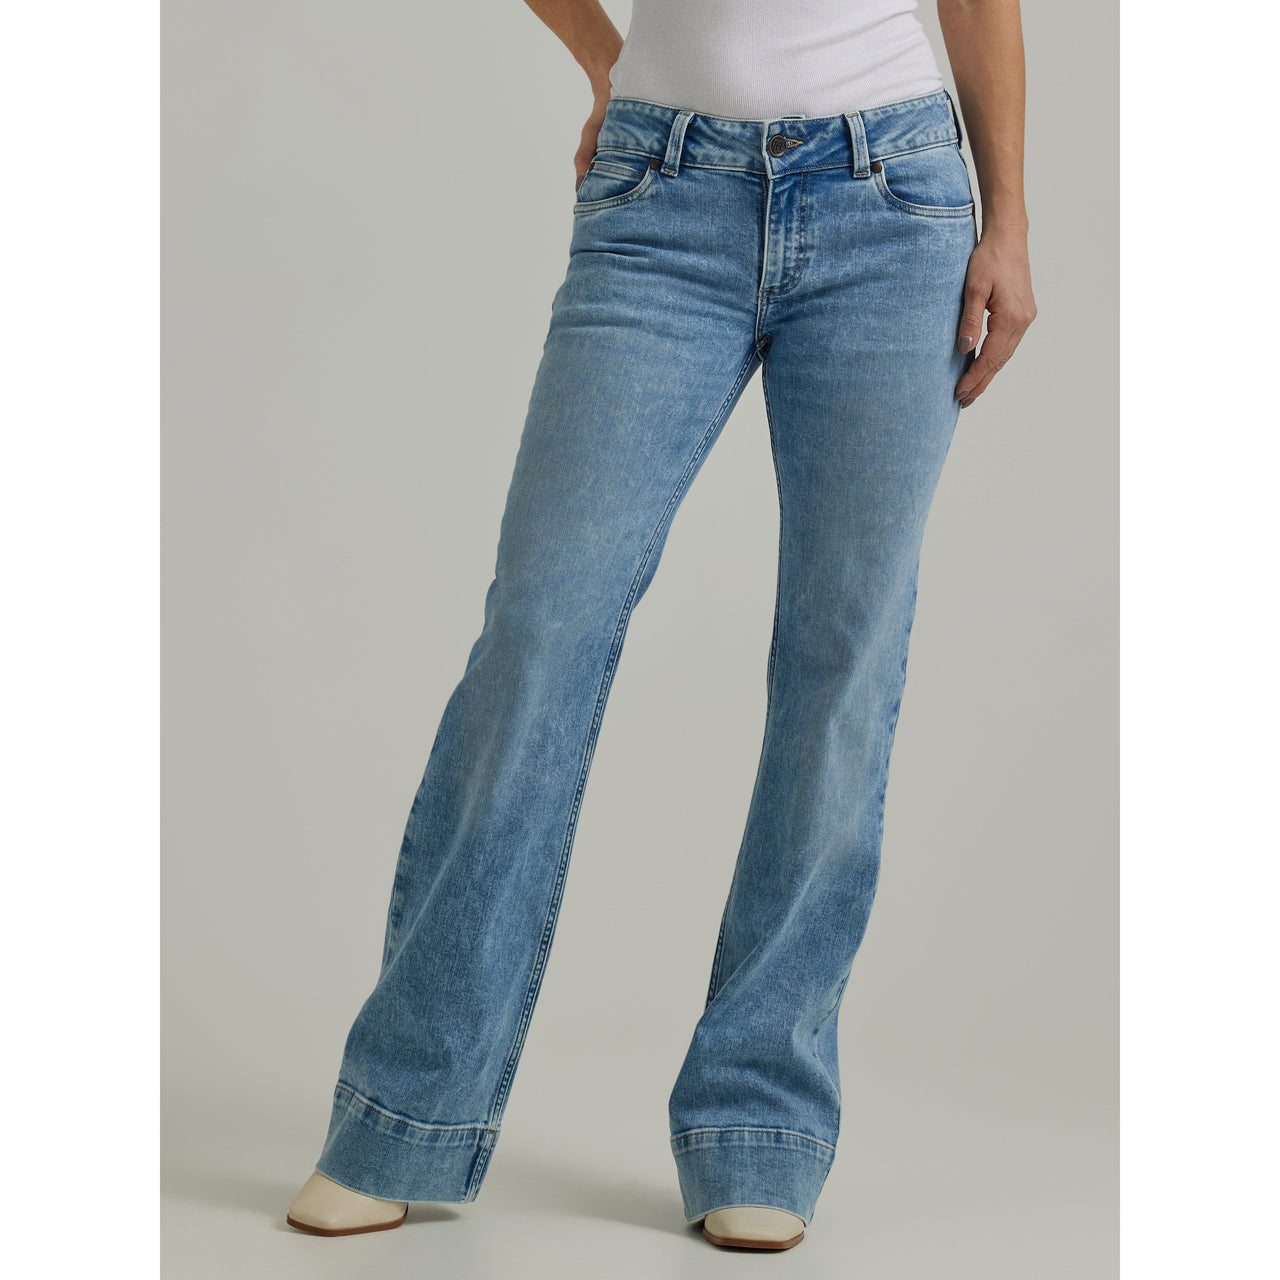 Wrangler Women's Retro Mae Mid Rise Trouser Jeans - Kacey